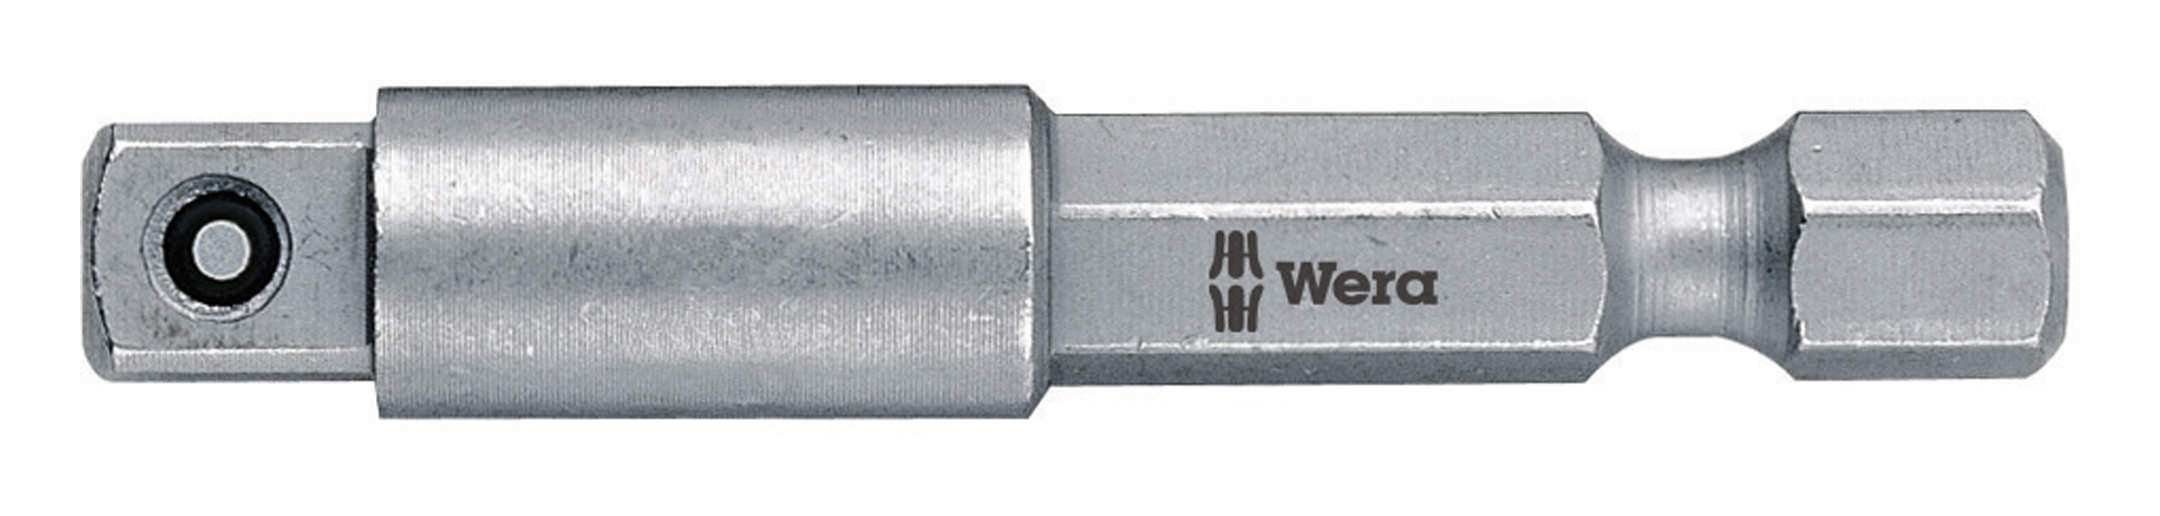 Wera Steckschlüssel, Adapter 1/4" für 3 / 8" Einsatz 50 mm